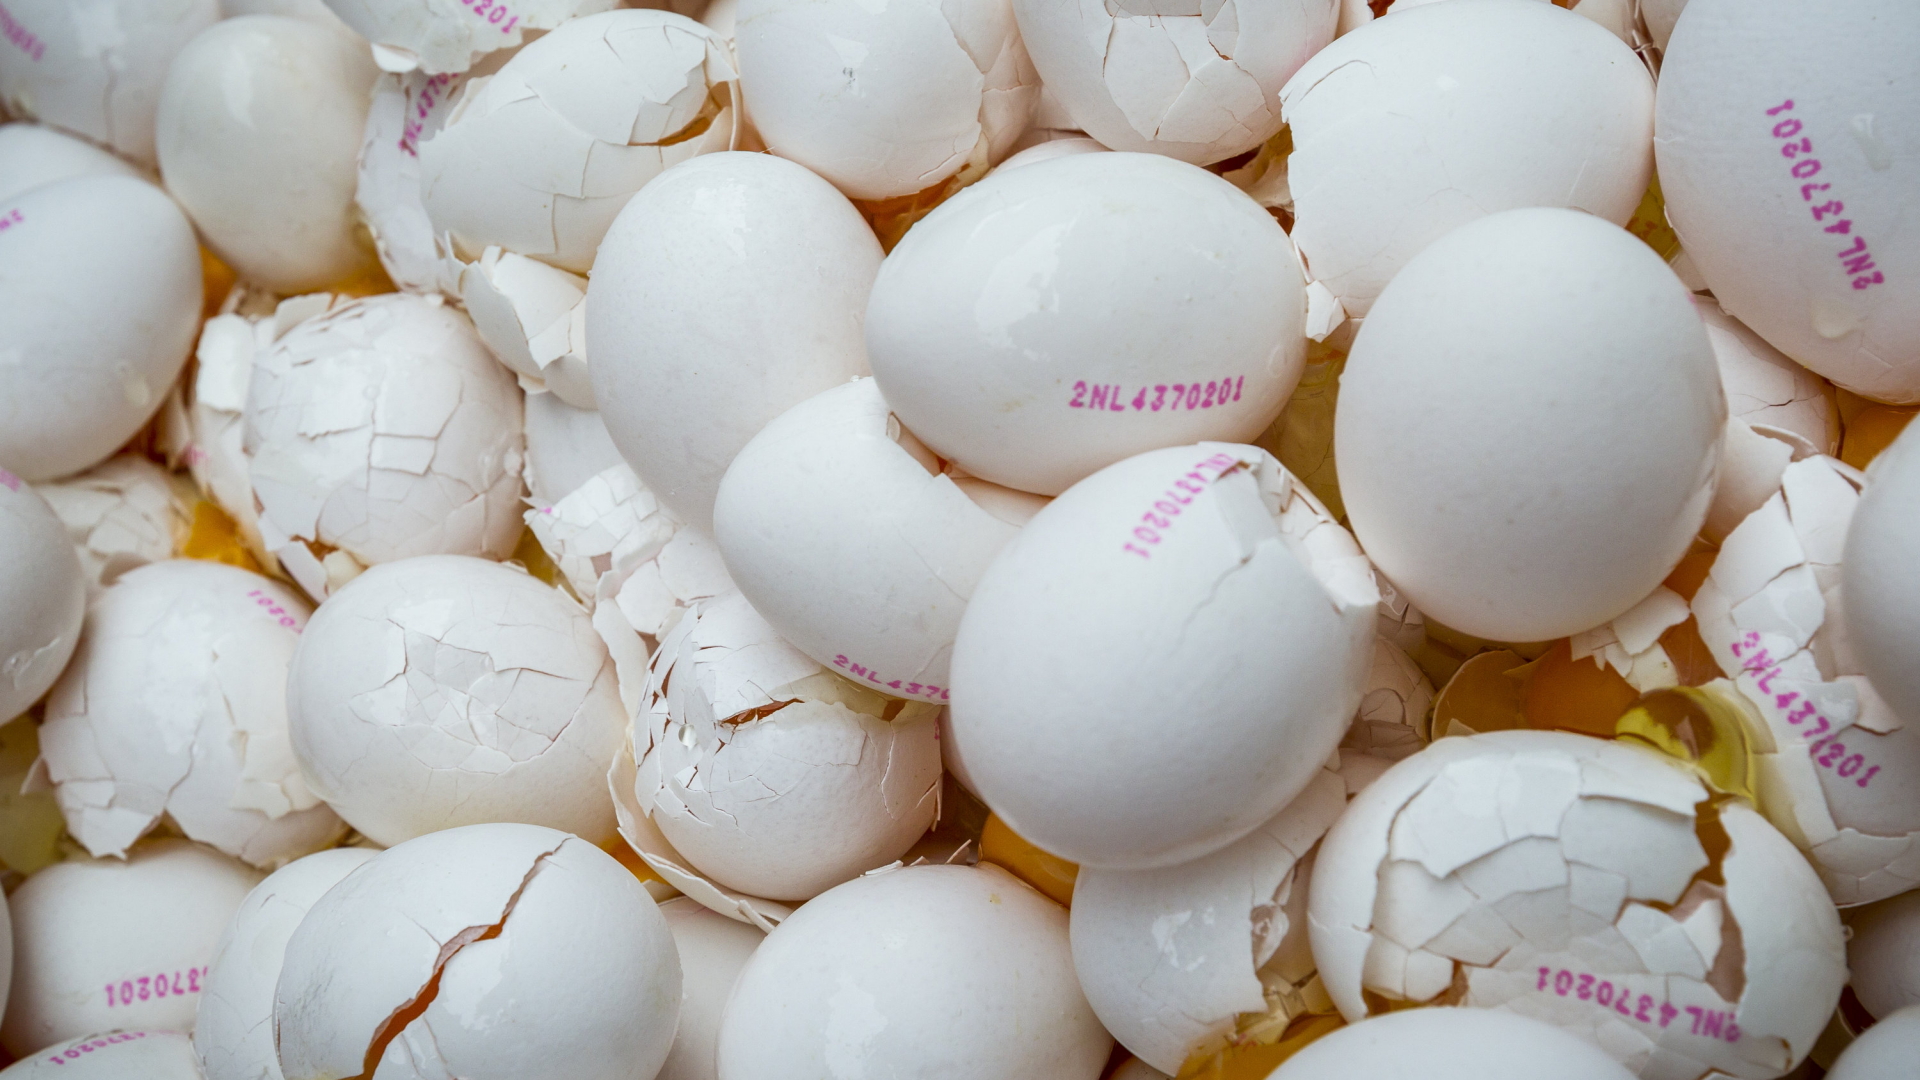 Im Auftrag der niederländischen Umweltbehörde zerstörte Eier, die mit dem Insektizid Fipronil verseucht waren. | dpa